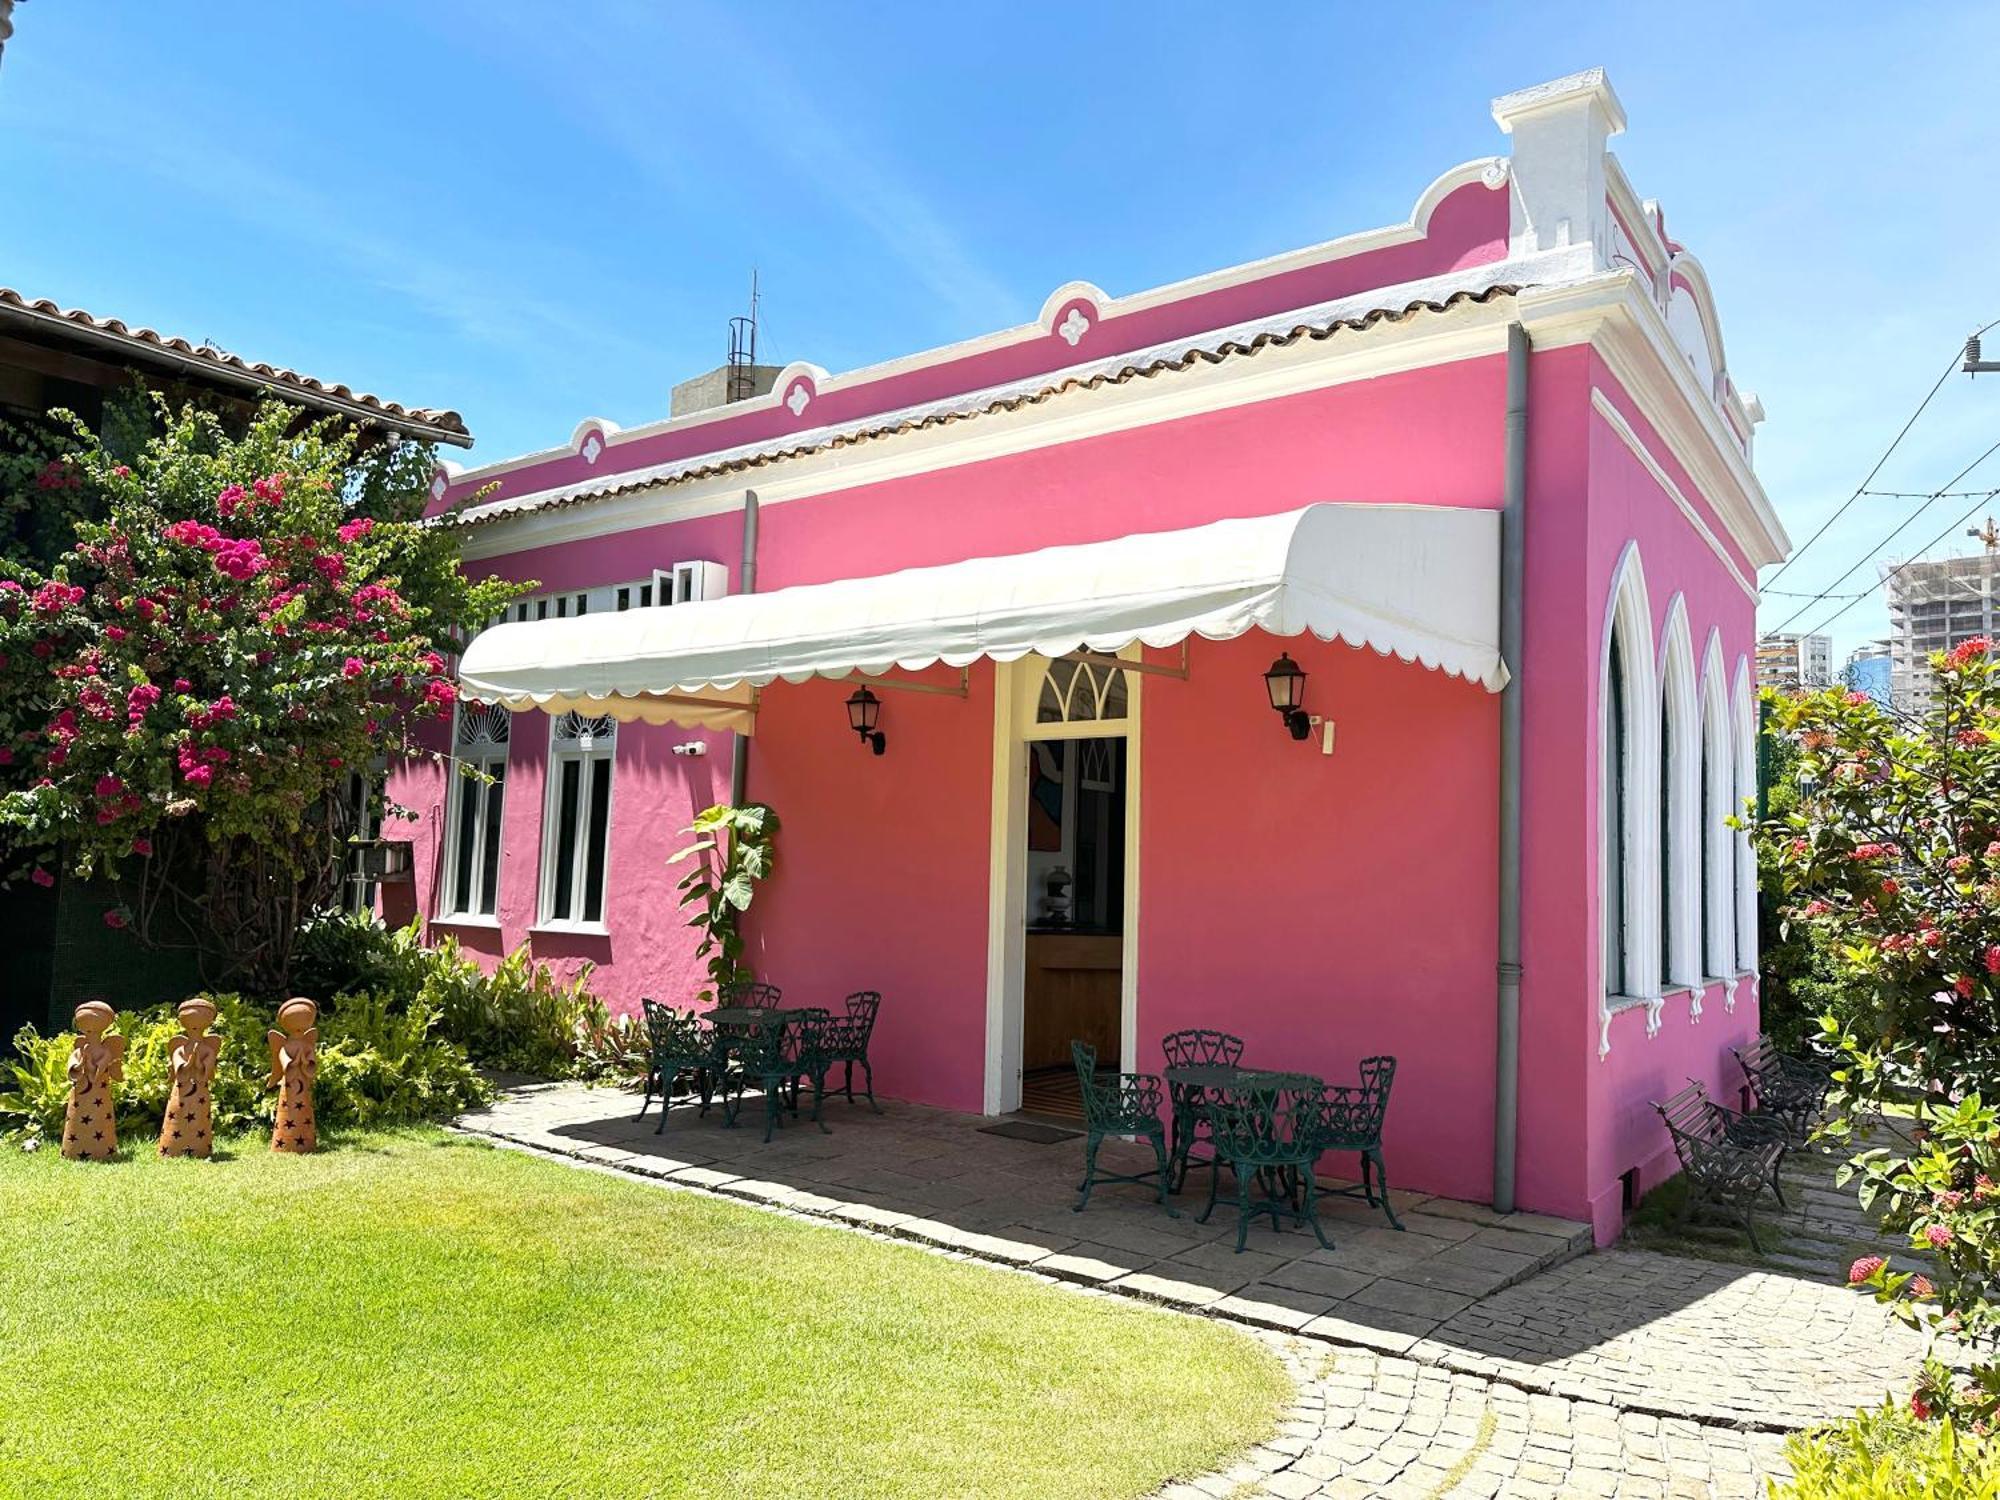 Hotel Catharina Paraguaçu Salvador Bagian luar foto